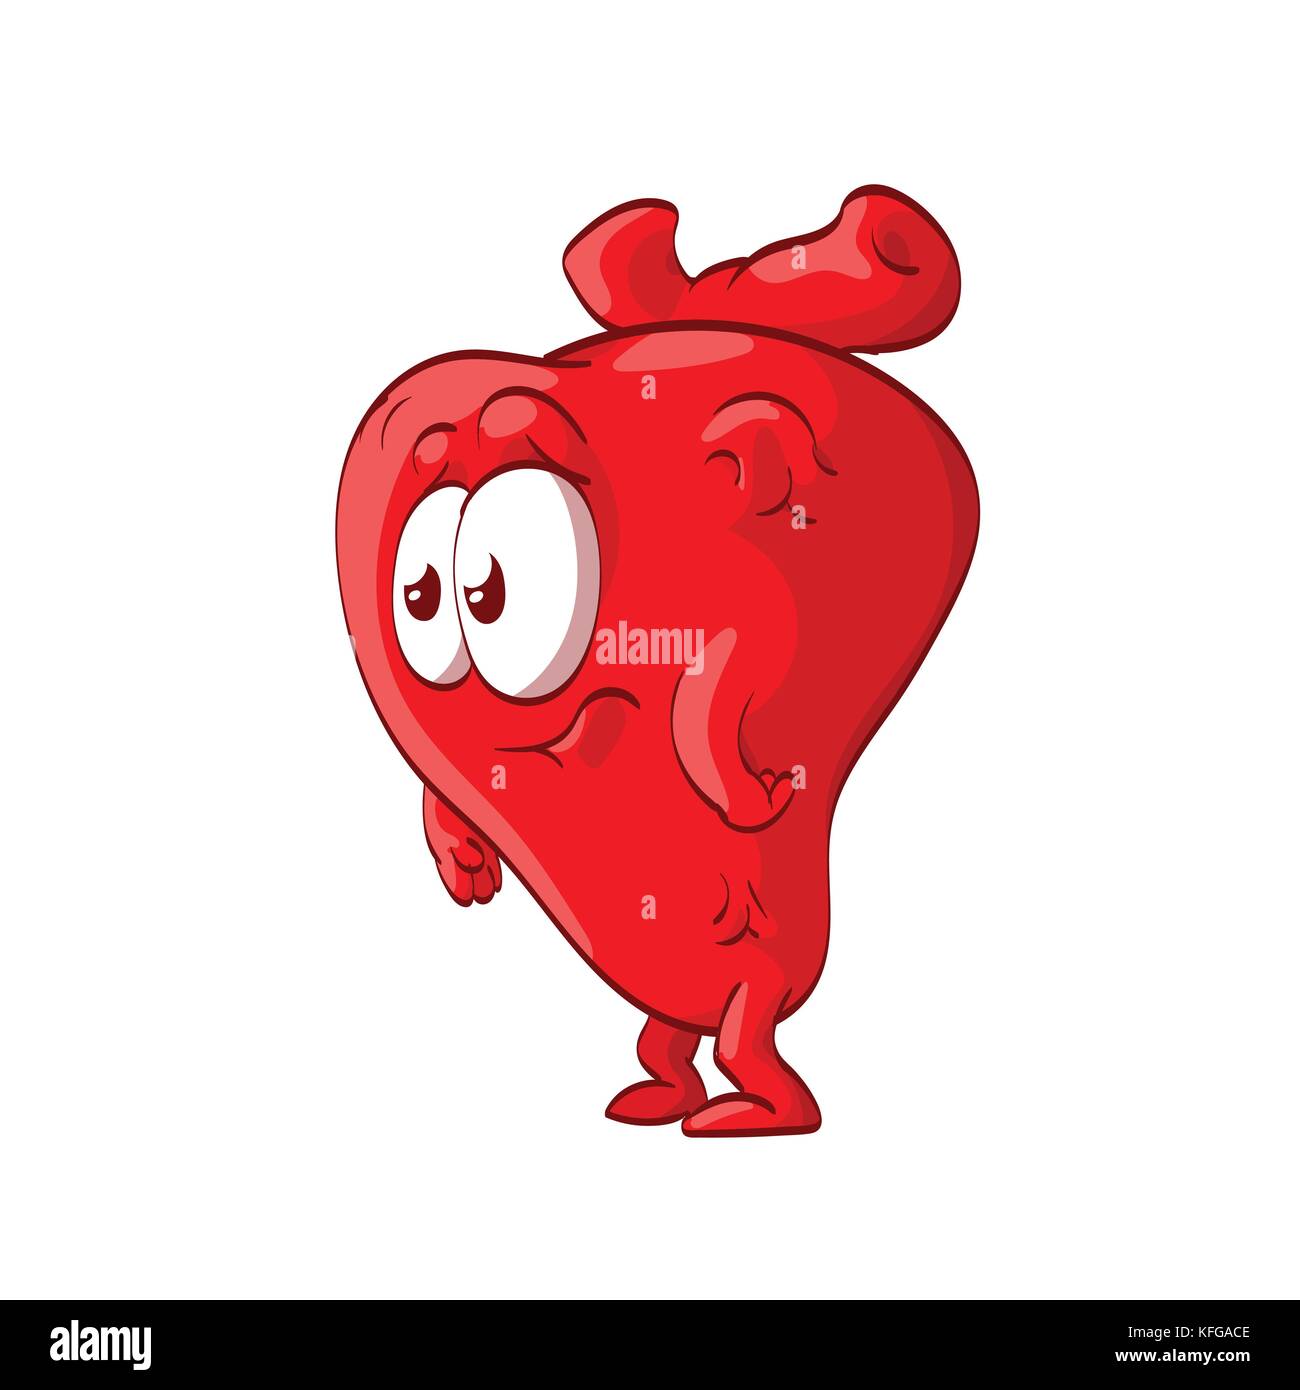 Colorata illustrazione vettoriale di un cartone animato cuore anatomico con il volto, guardando scioccato, confuso o triste Illustrazione Vettoriale